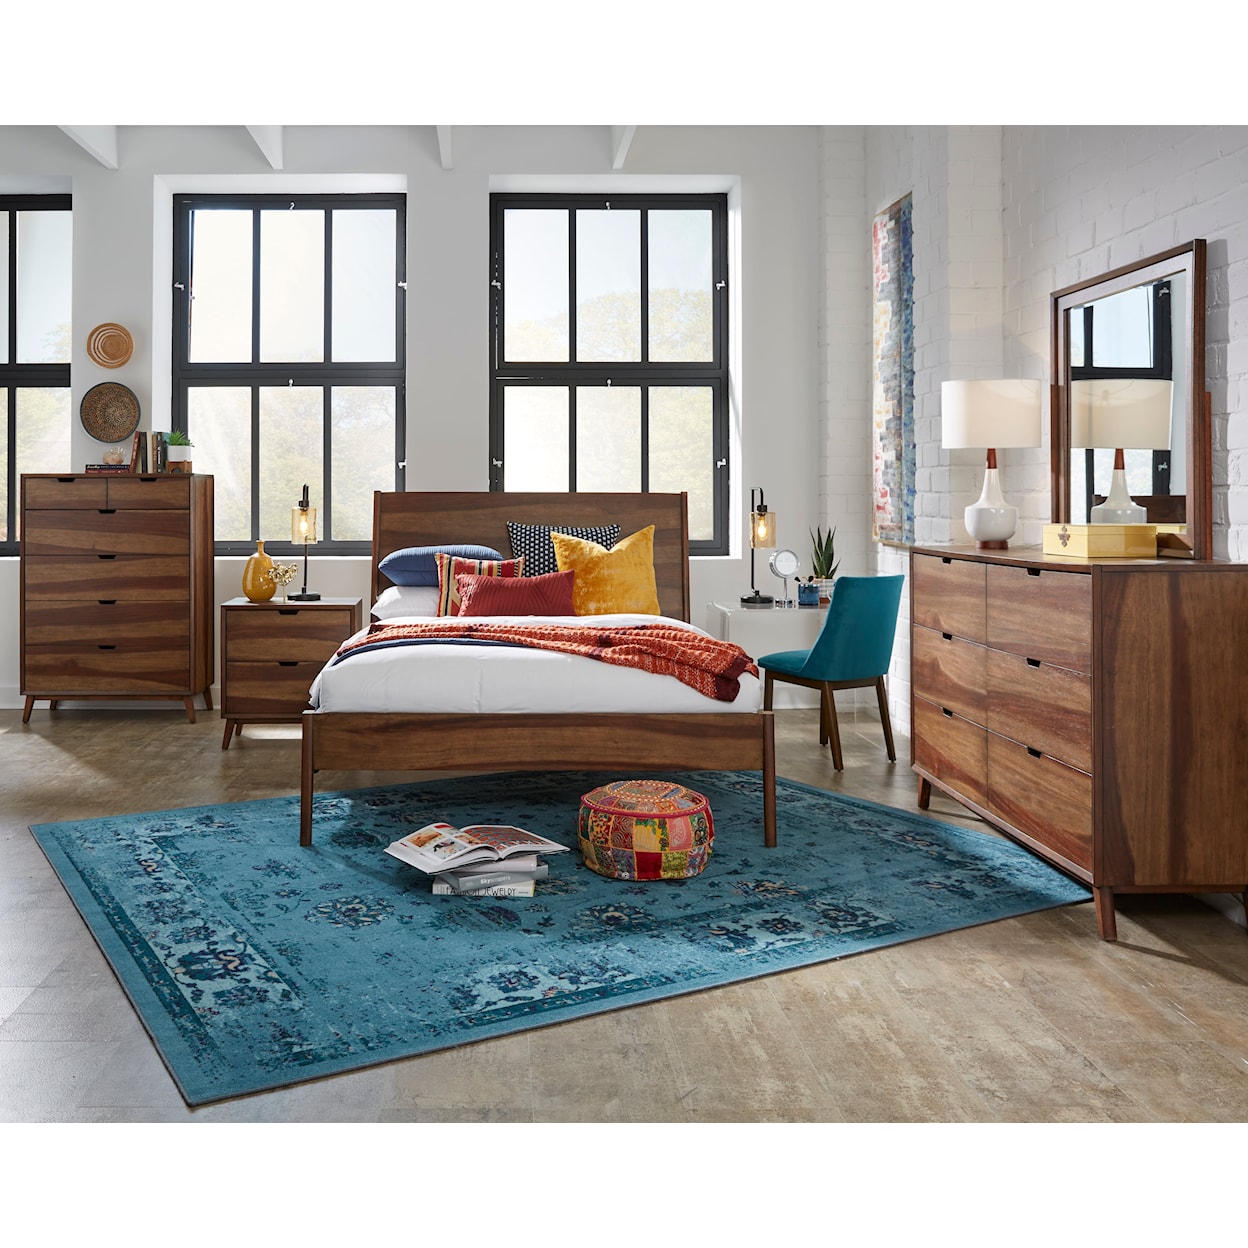 Progressive Furniture Bungalow 5-Piece Queen Bedroom Set